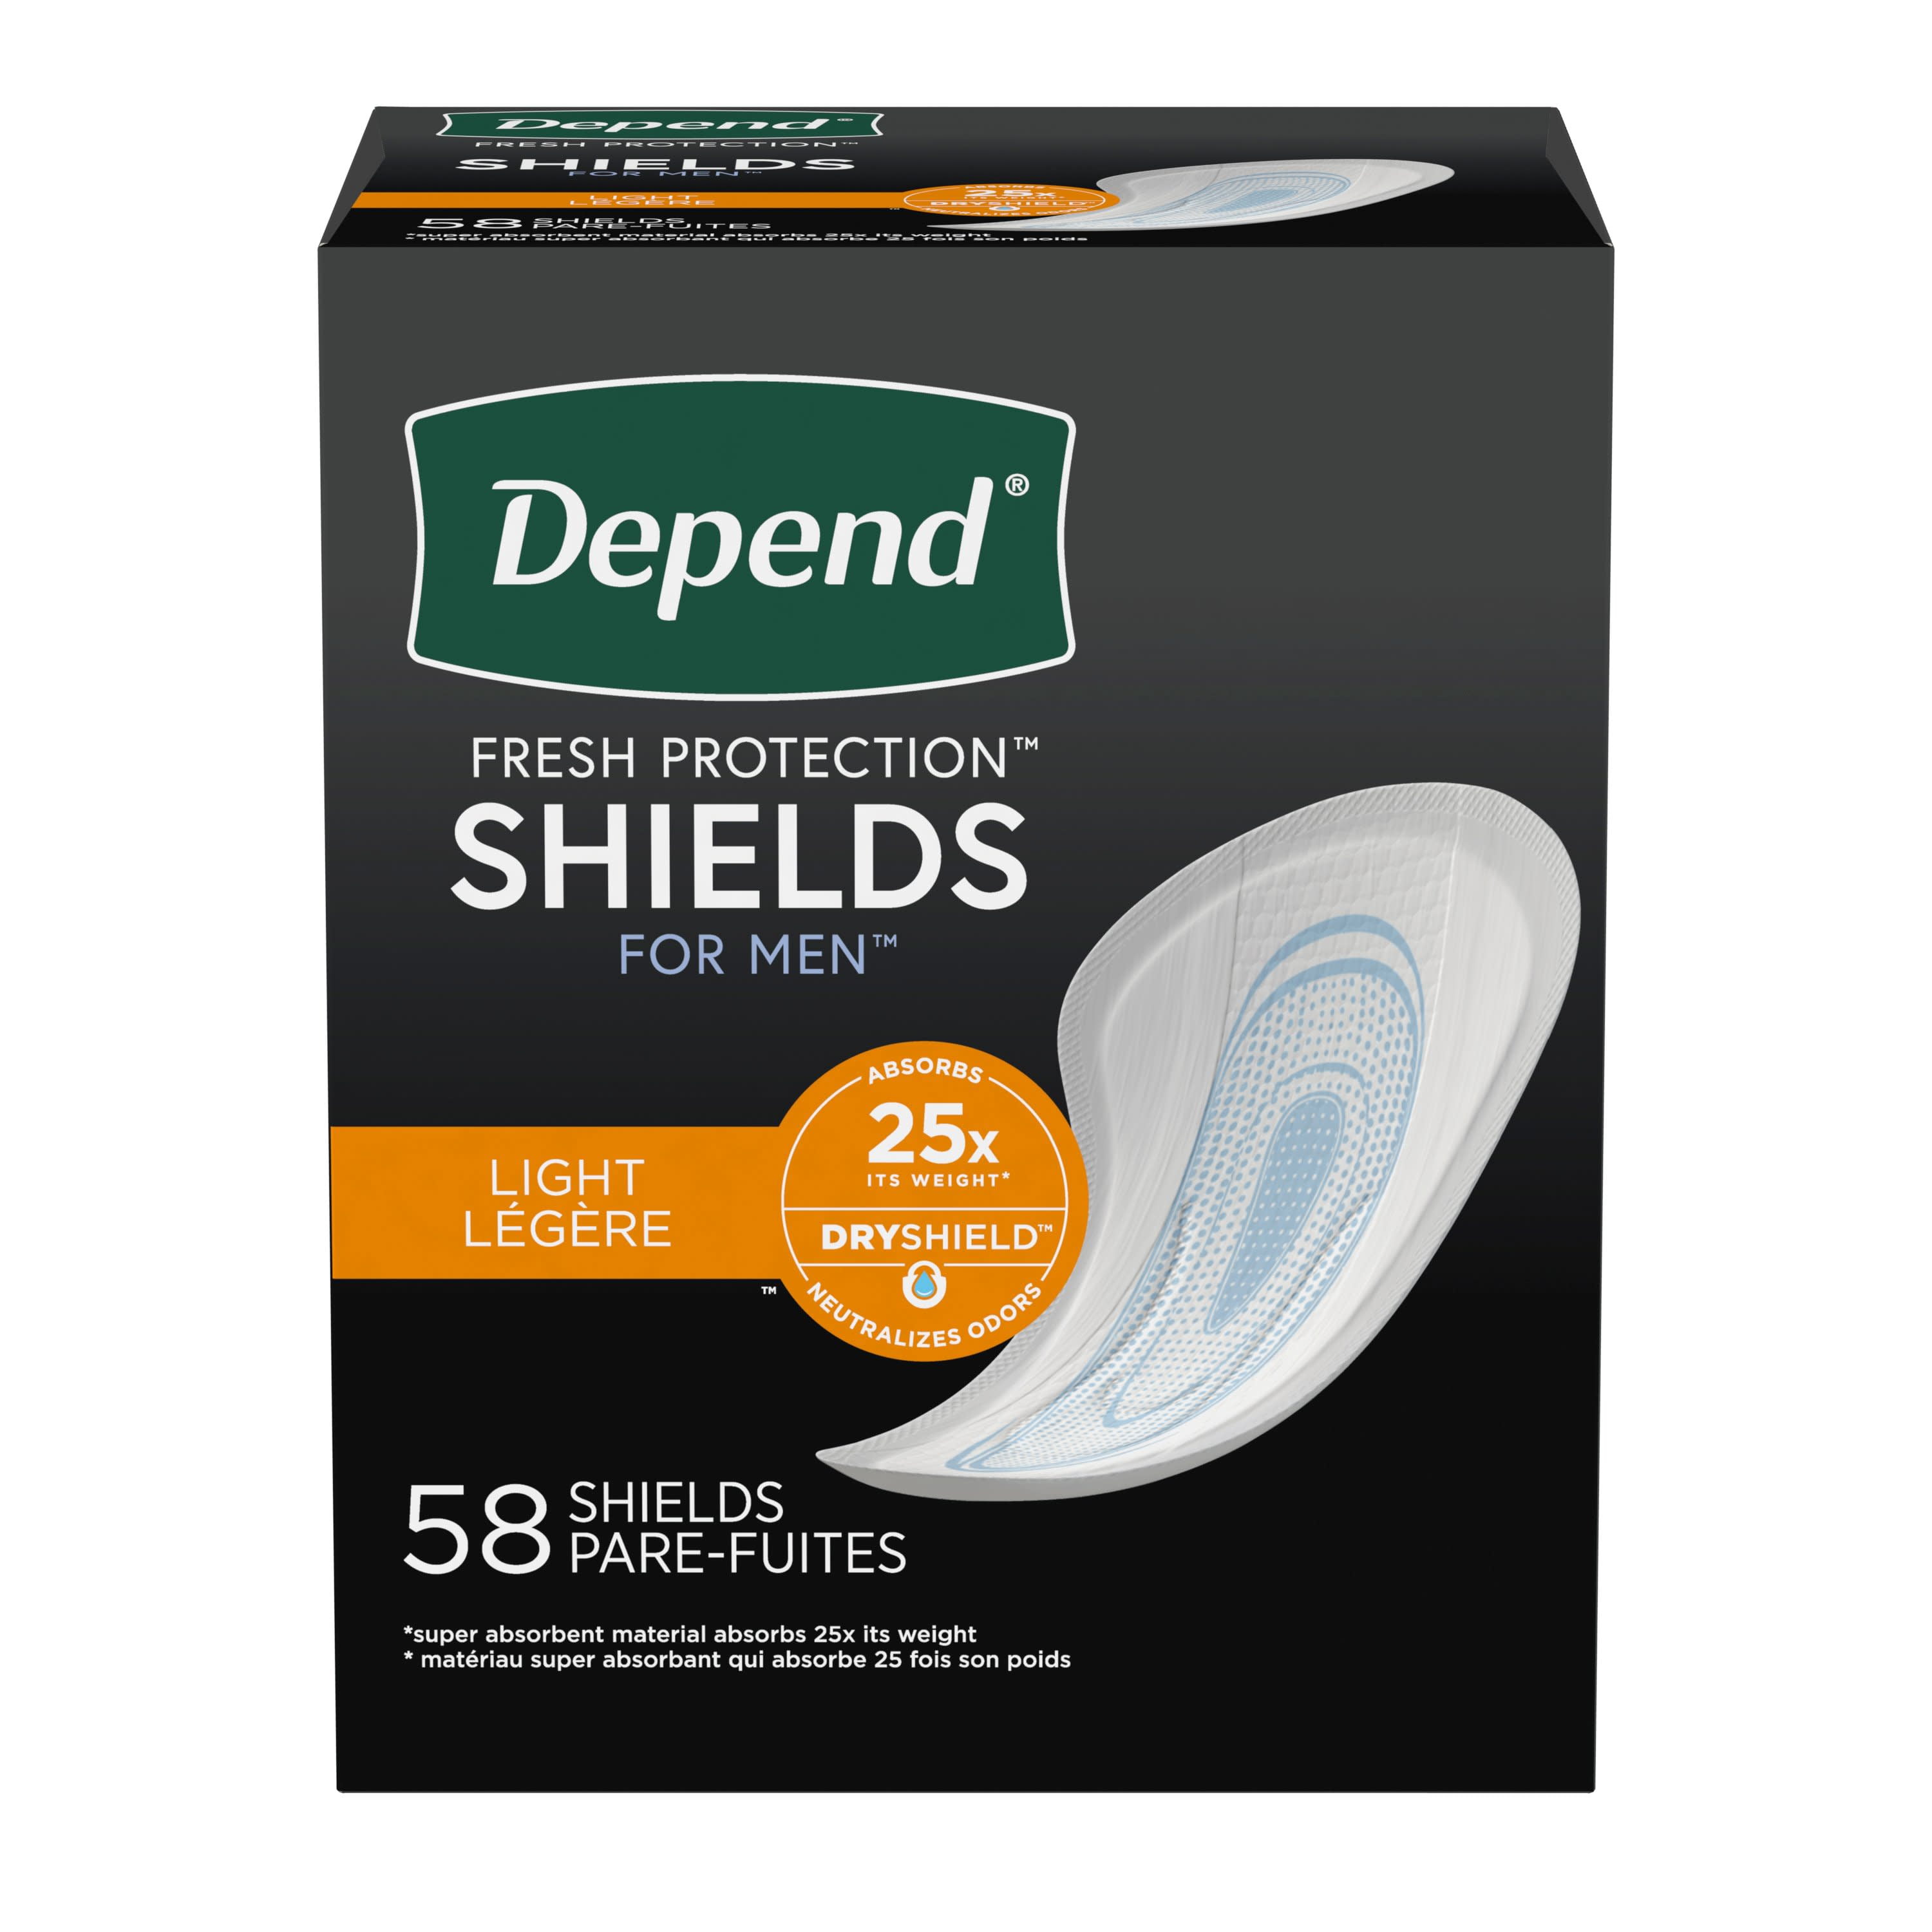 Shields for Men